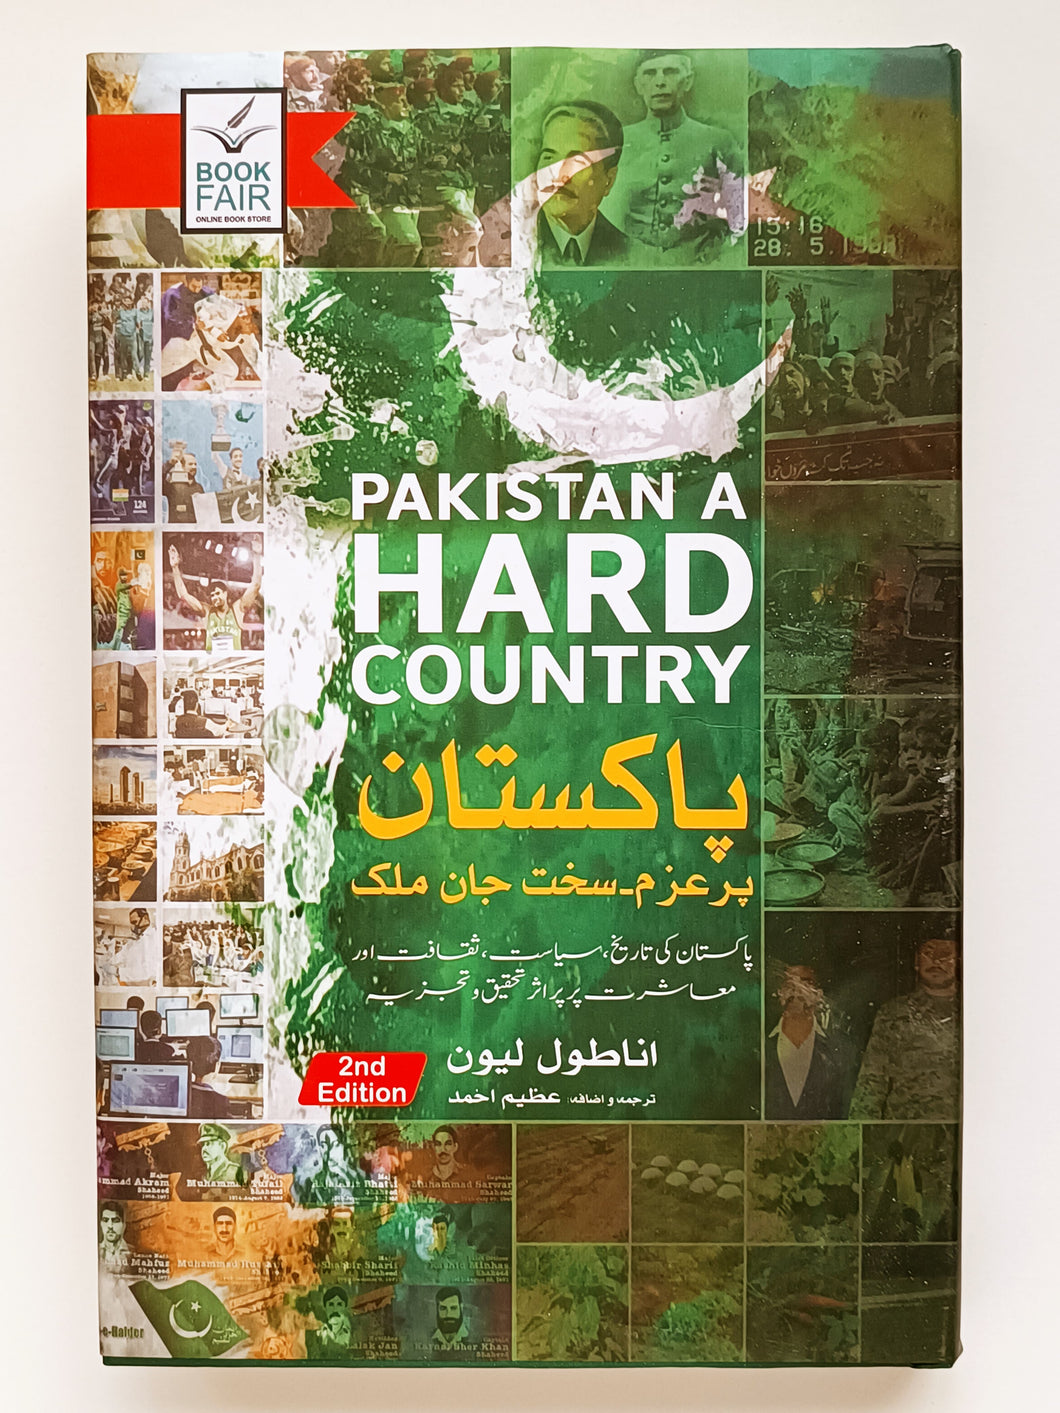 Pakistan A Hard Country
پاکستان پُرعزم، سخت جان ملک